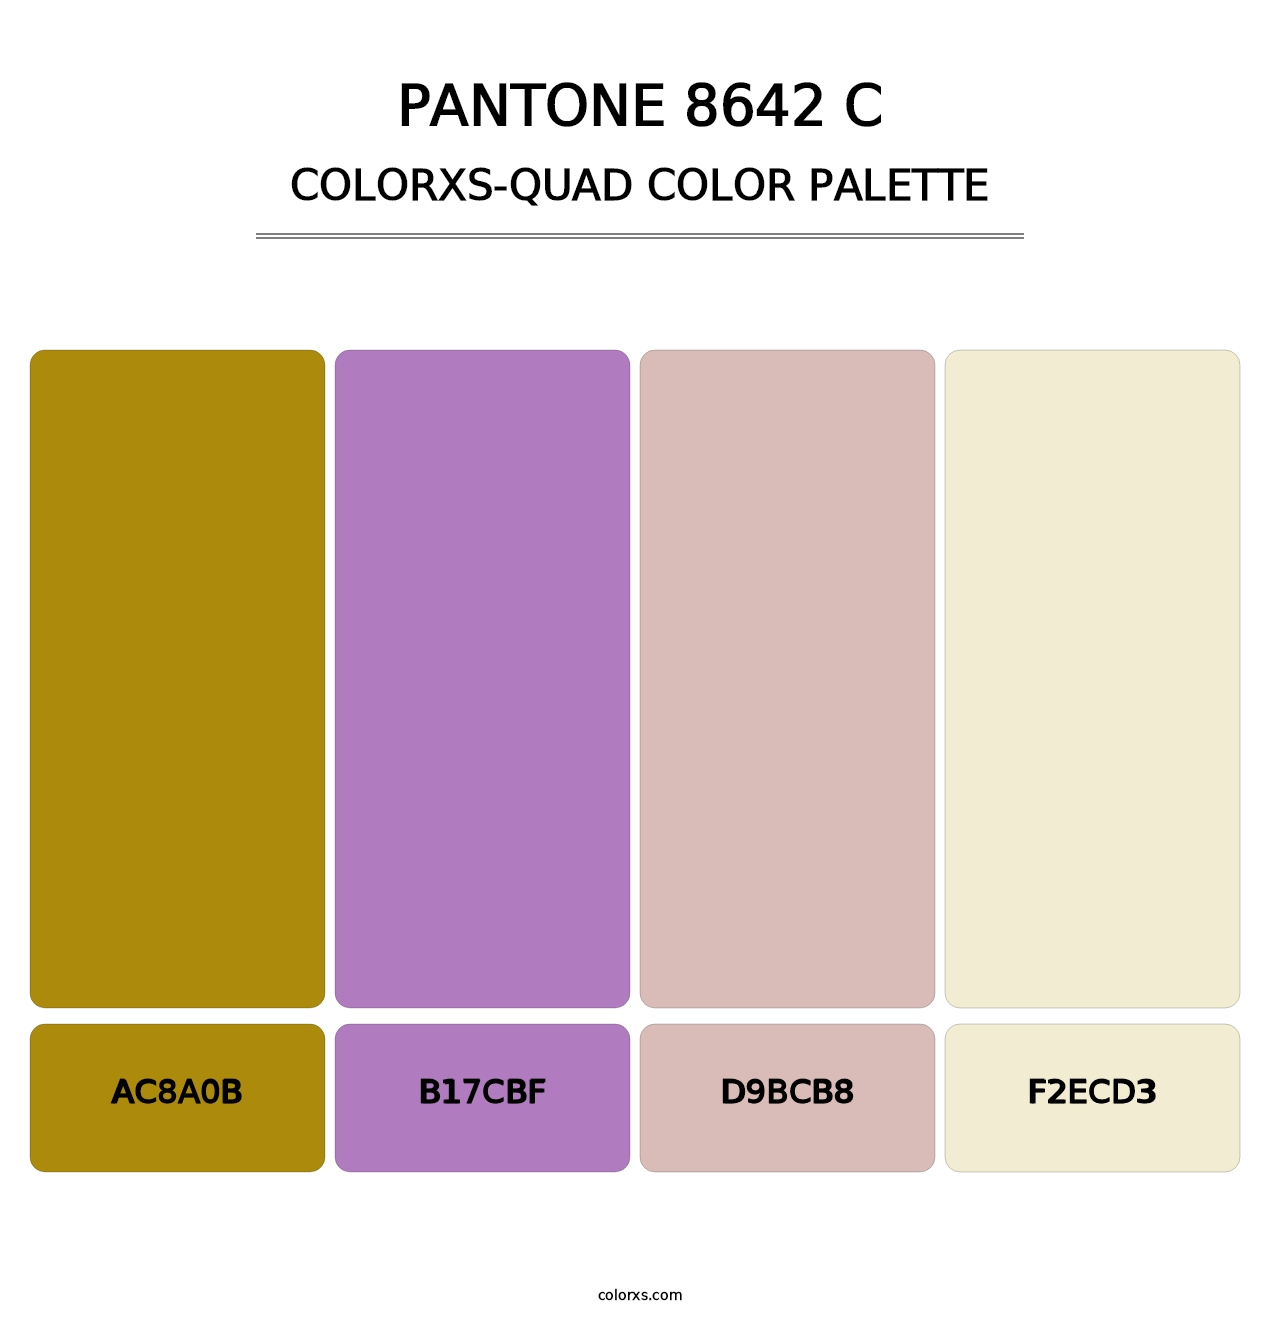 PANTONE 8642 C - Colorxs Quad Palette